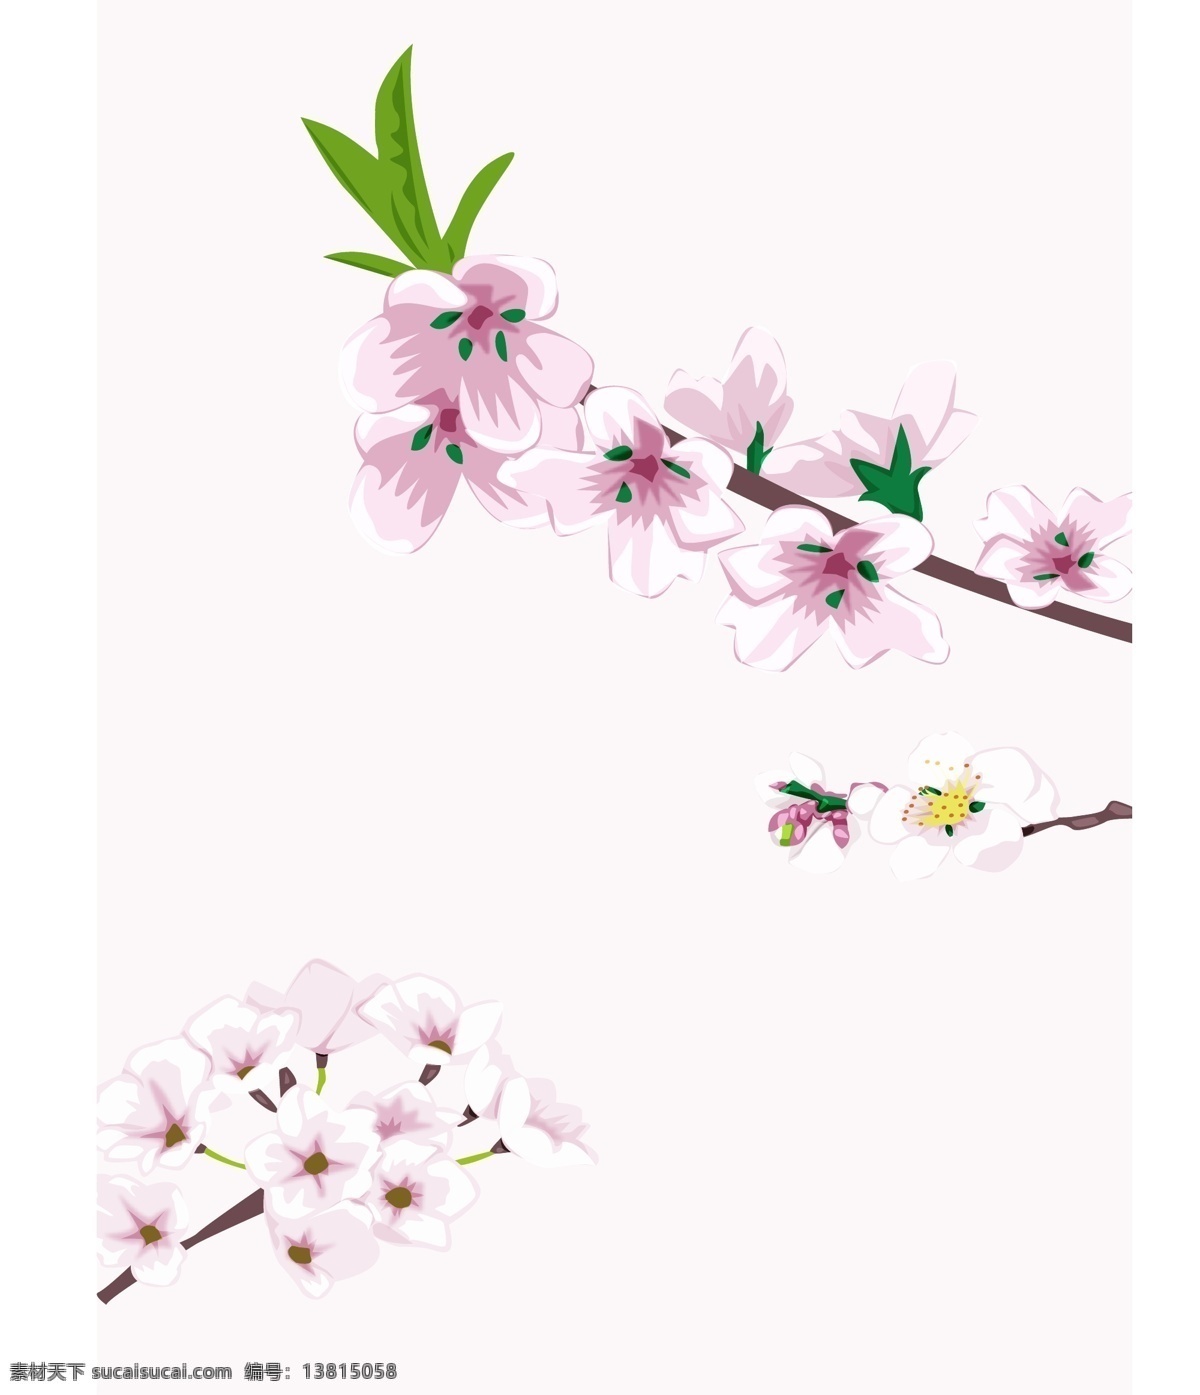 春意盎然 桃花 梨花 春天 绿叶 枝条 白色花 粉色花 白底 树木树叶 生物世界 矢量